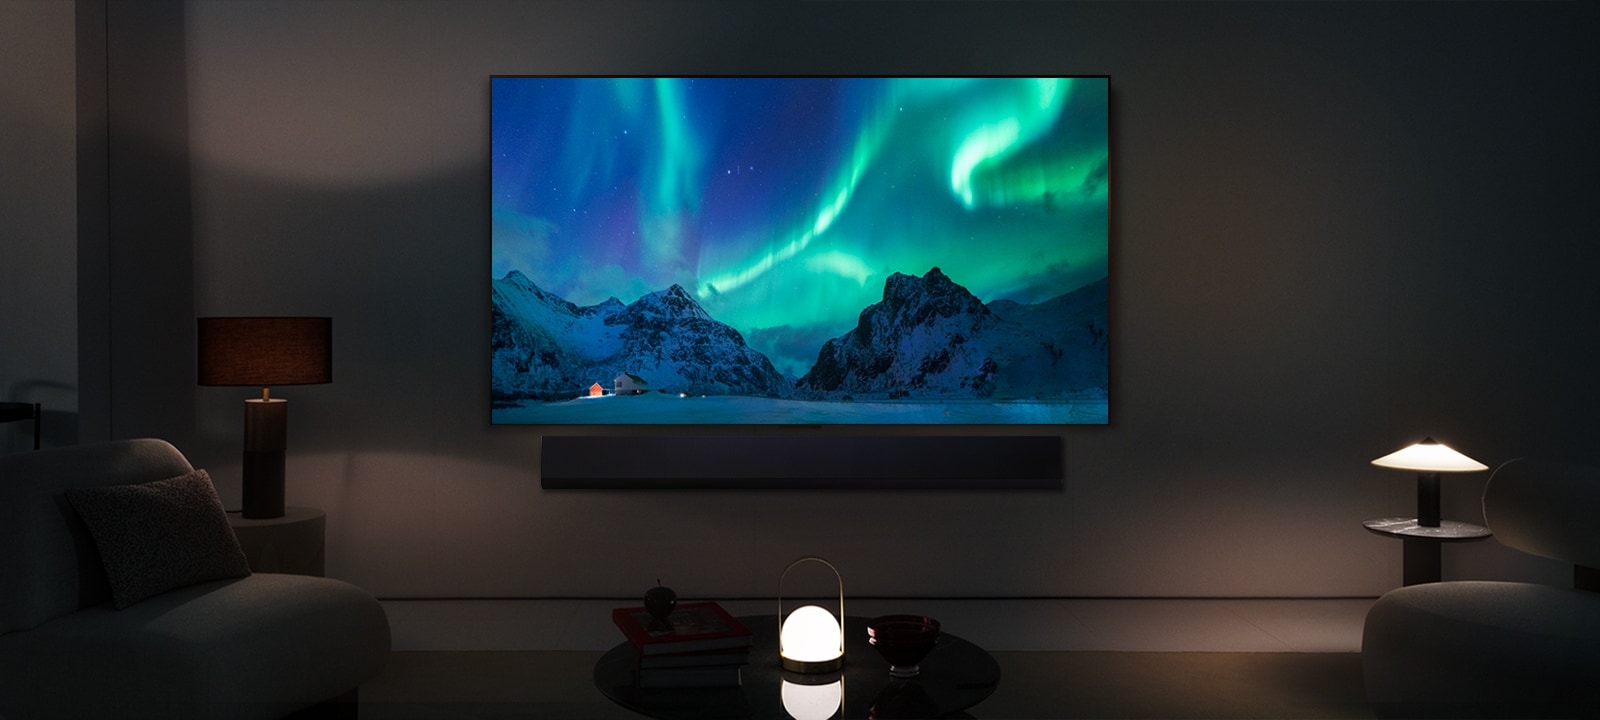 LG OLED TV a LG Soundbar v moderním obývacím prostoru v noci. Na obrazovce se zobrazuje obraz polární záře s ideální úrovní jasu.